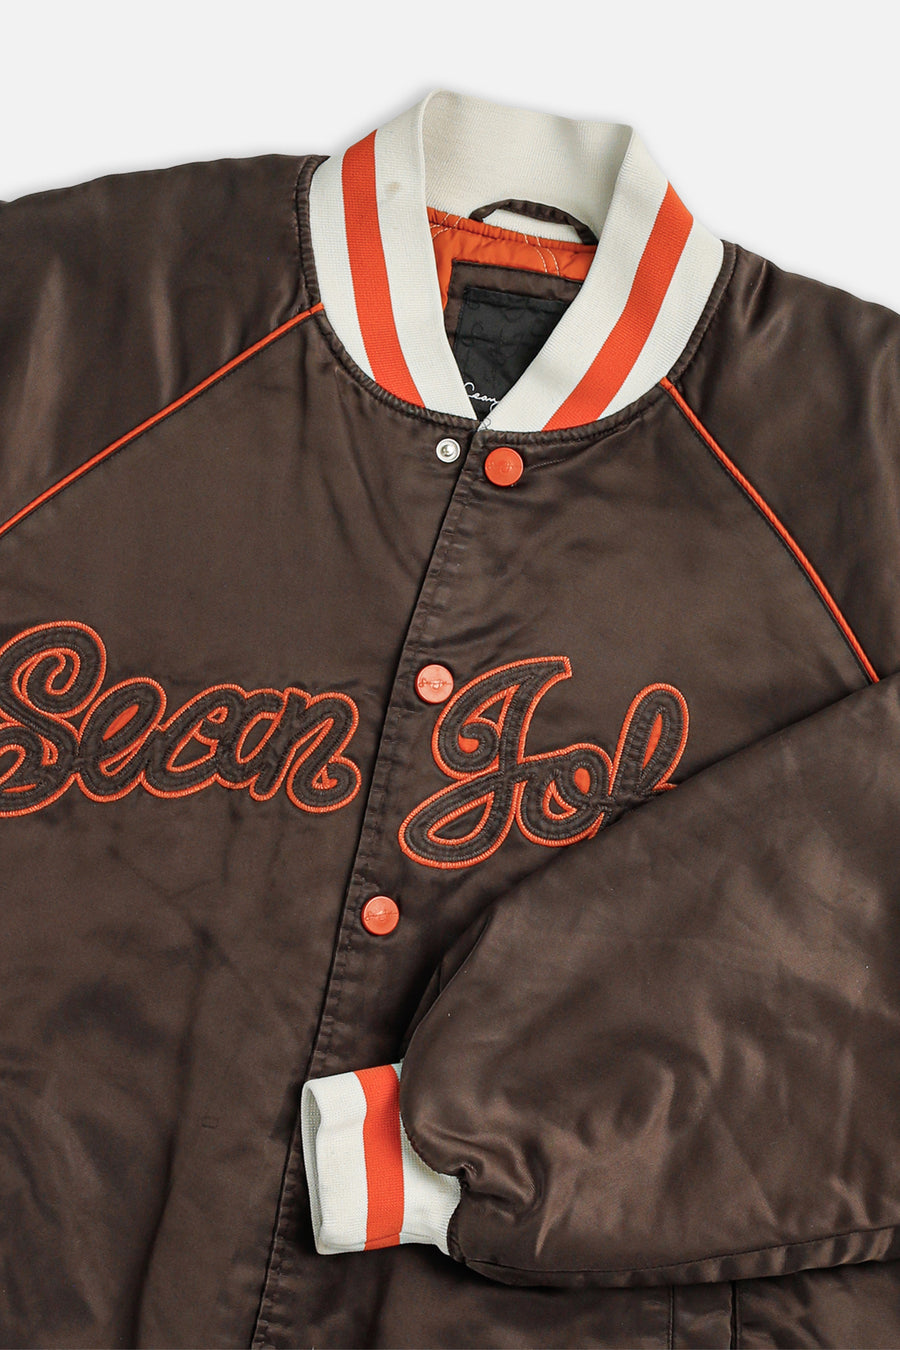 Vintage Sean John Bomber Jacket - L